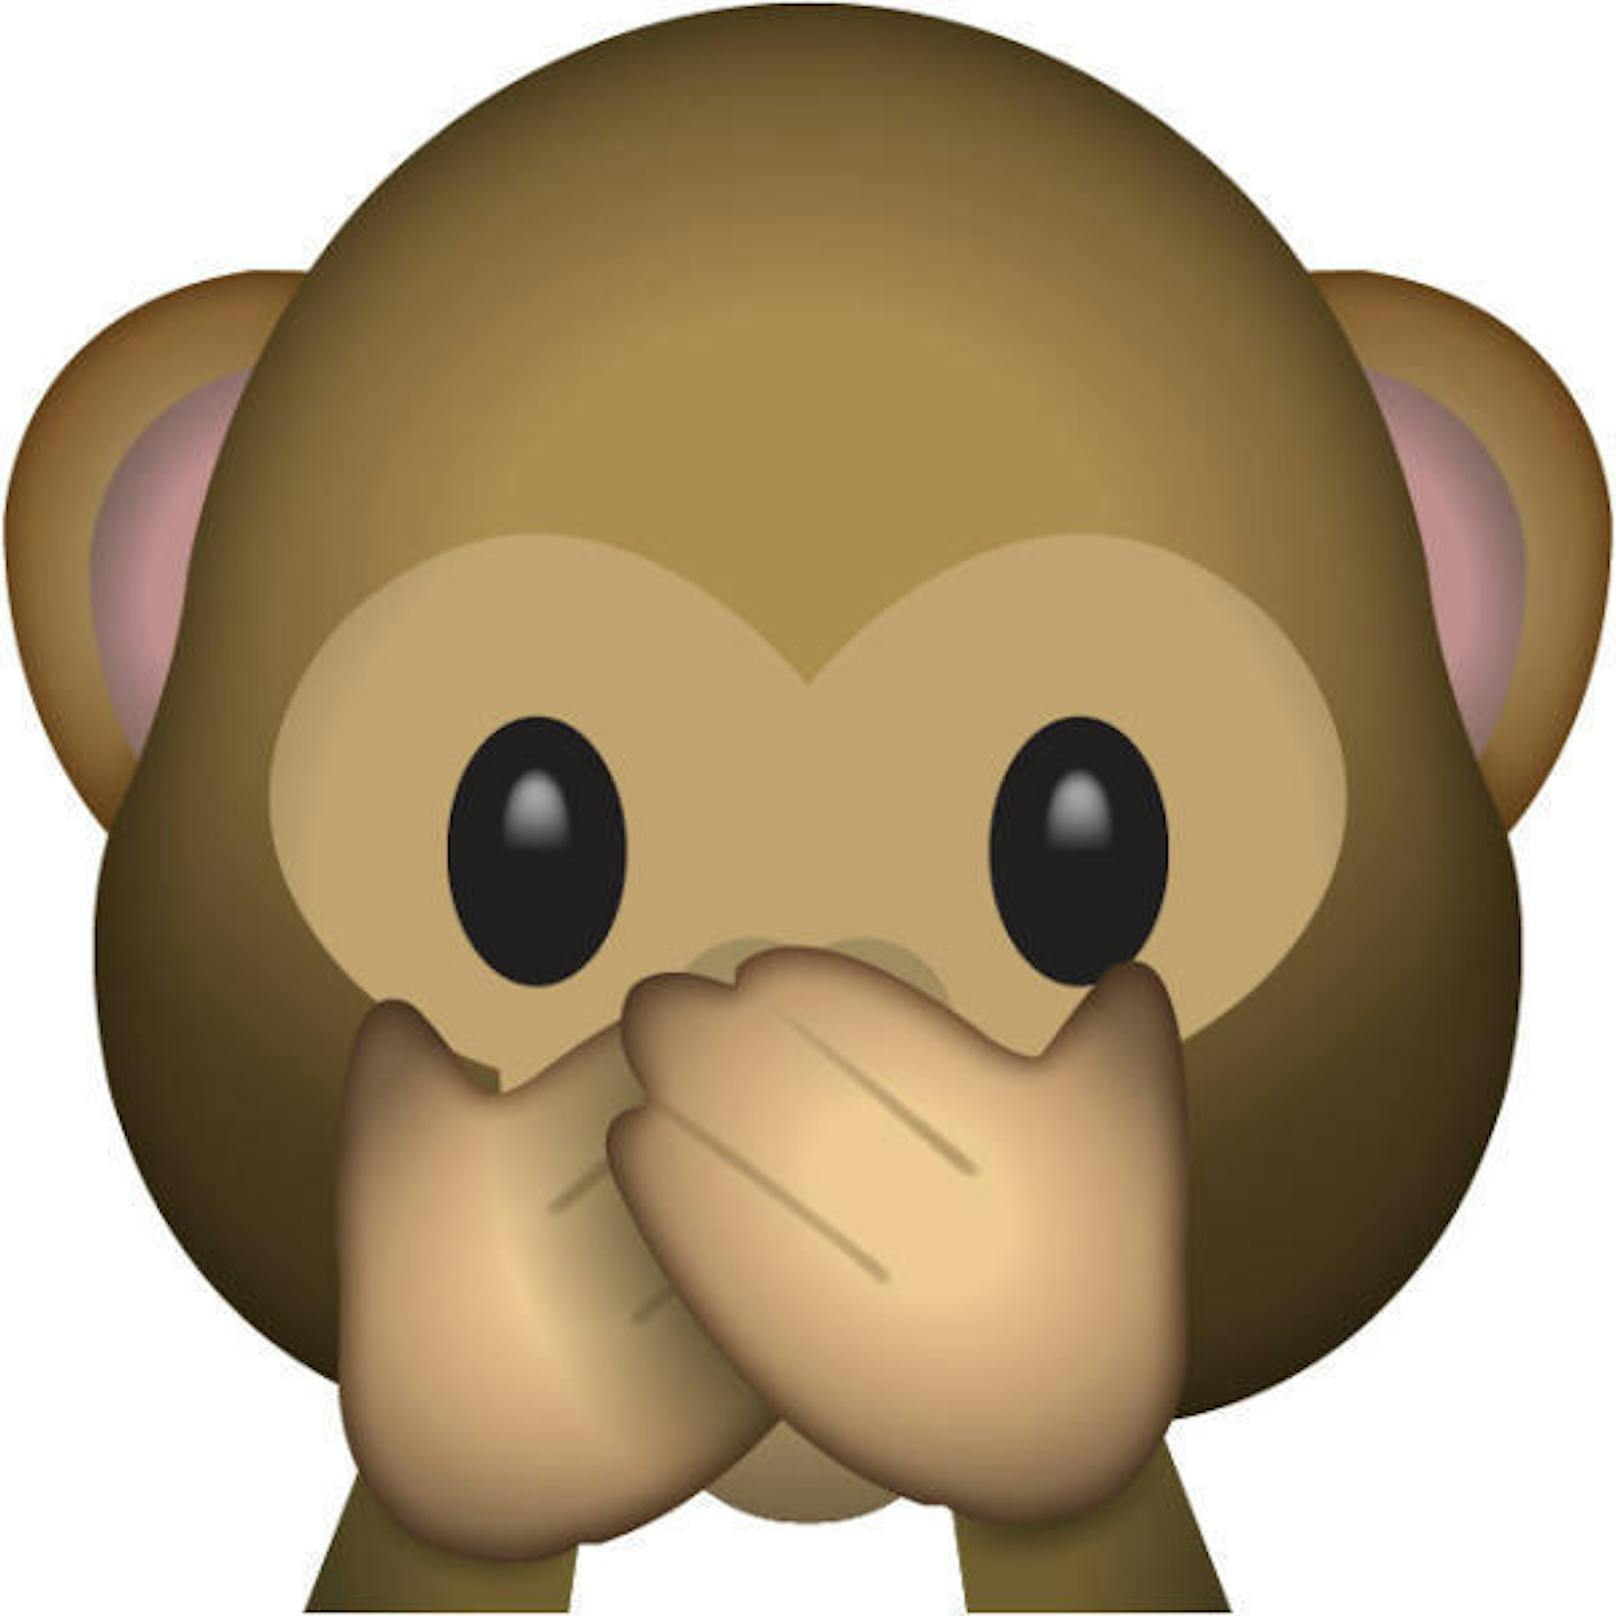 Mich laust der Affe! Oder besser: "Was hast du da gerade gesagt?" Mit dem Äffchen-Emoji punktet man bei der Damenwelt.